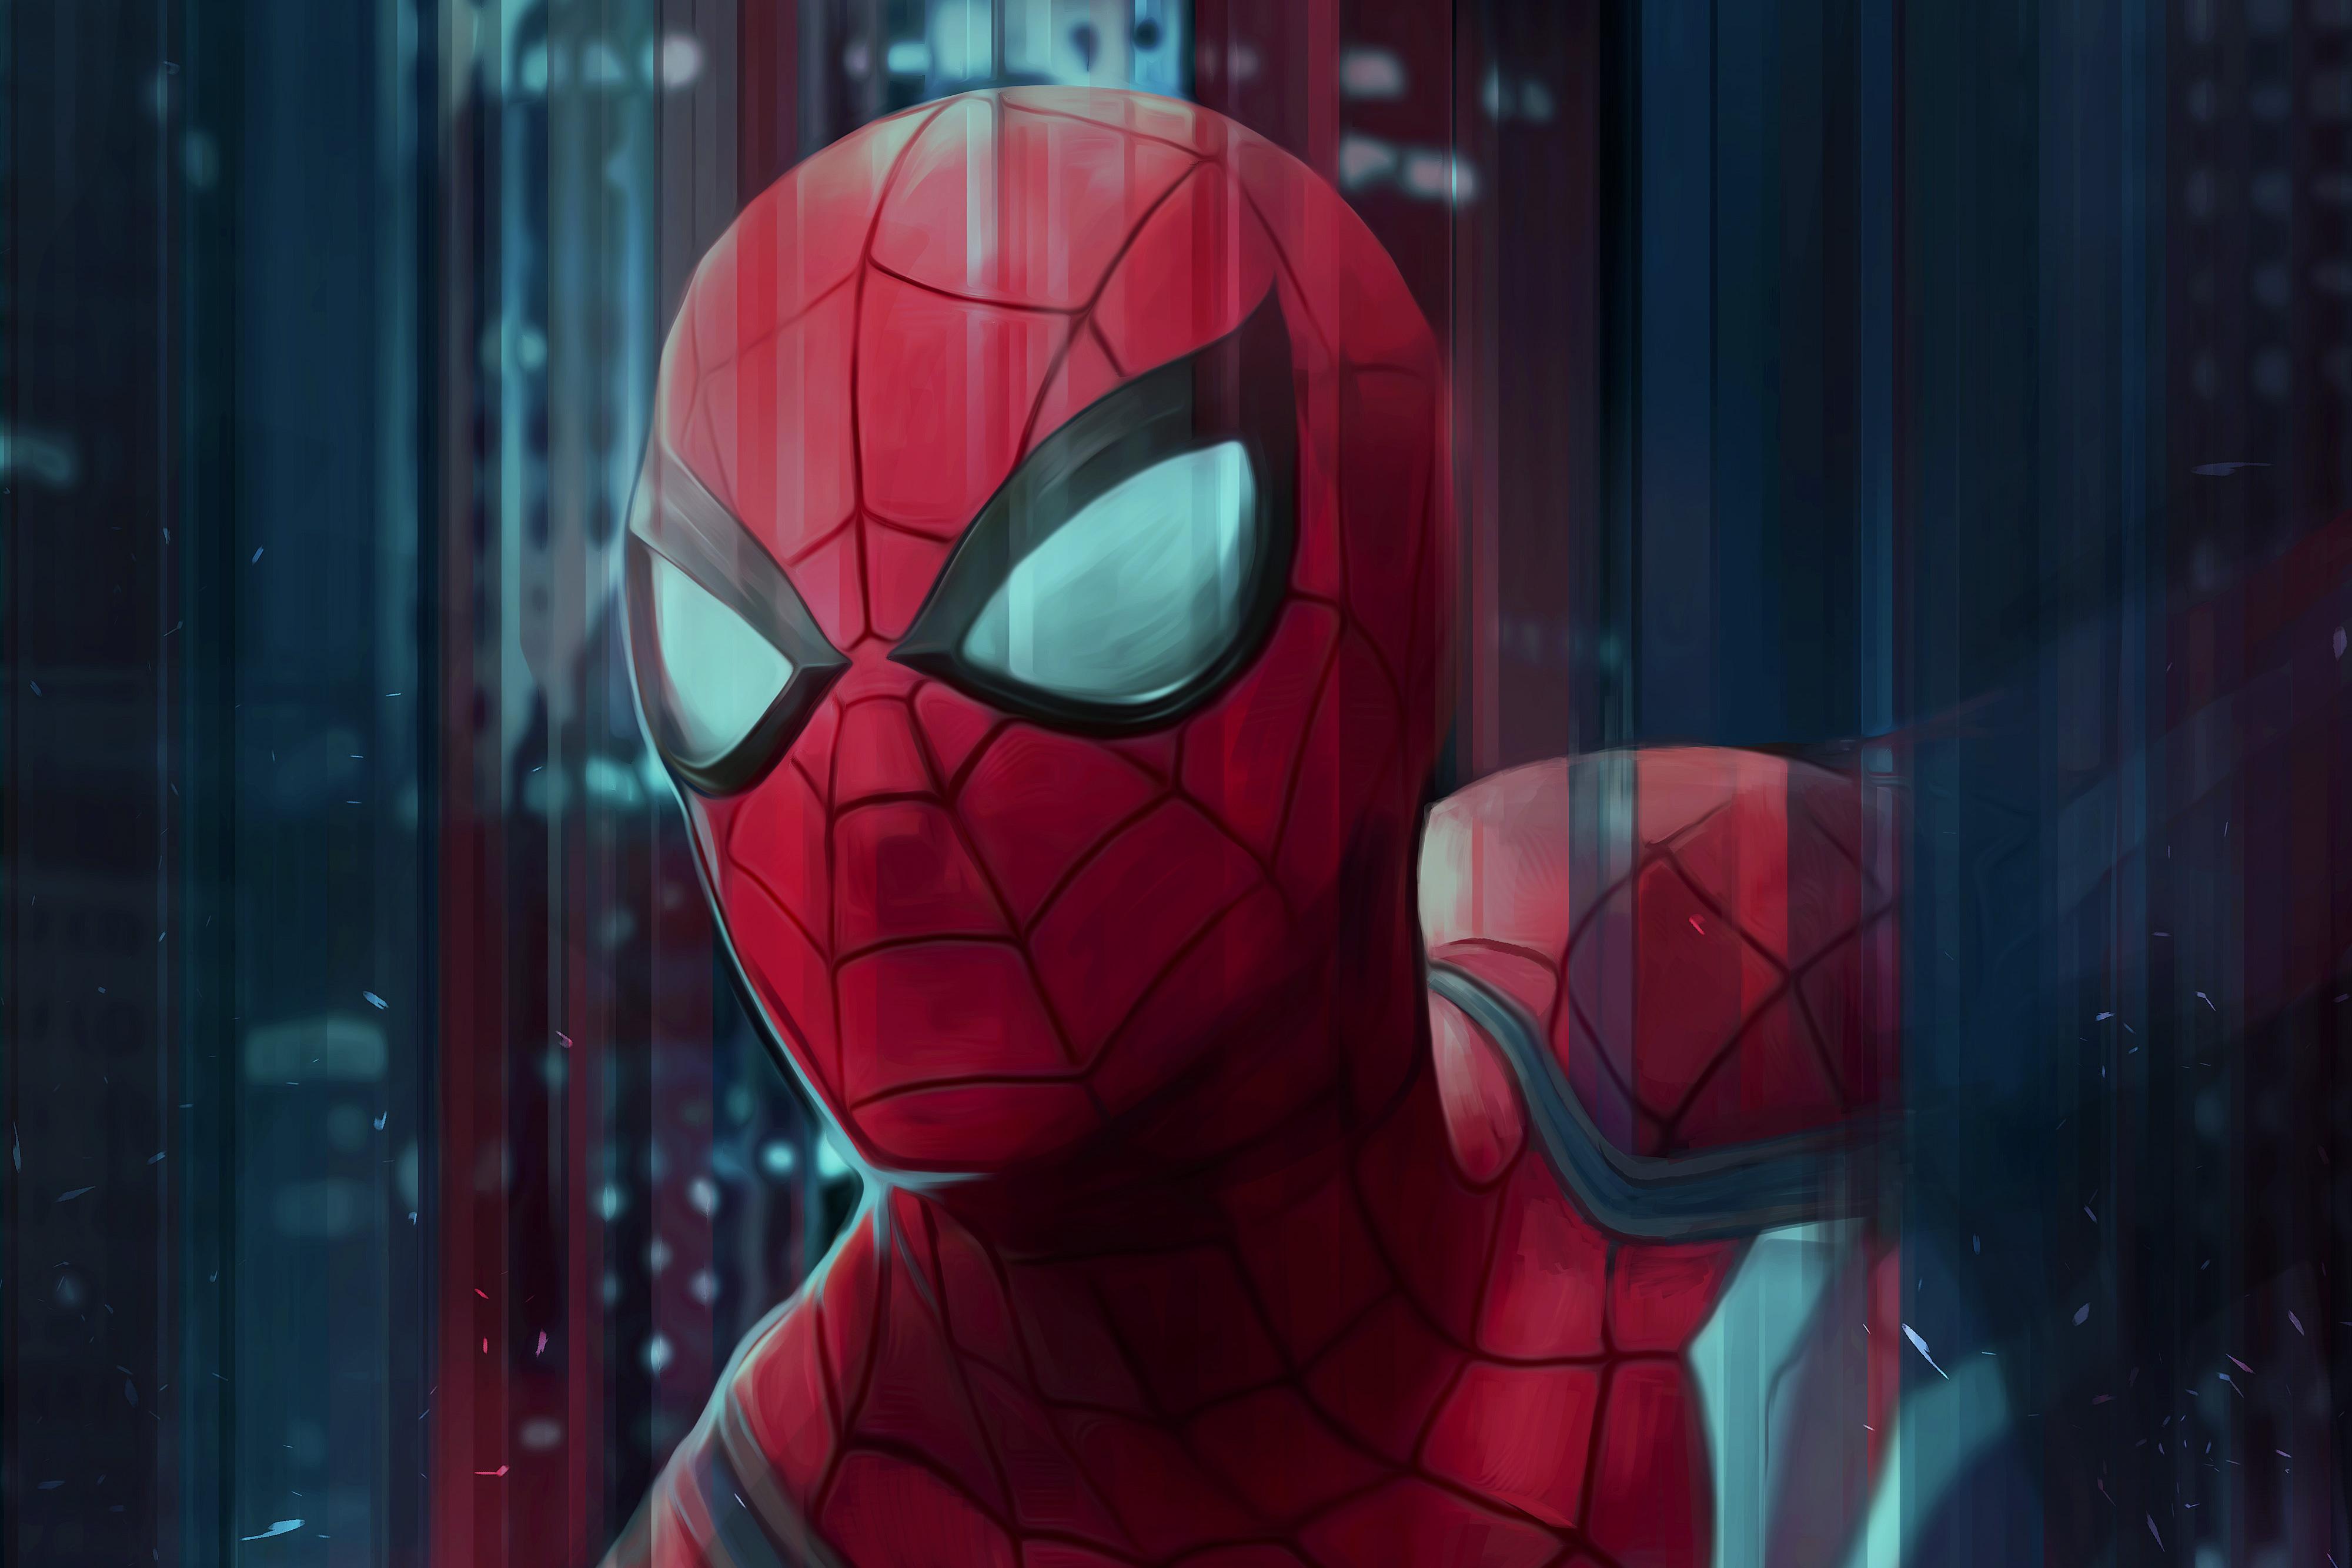 4000 x 2667 · jpeg - Spiderman Digital Art 4k, HD Superheroes, 4k Wallpapers, Images ...